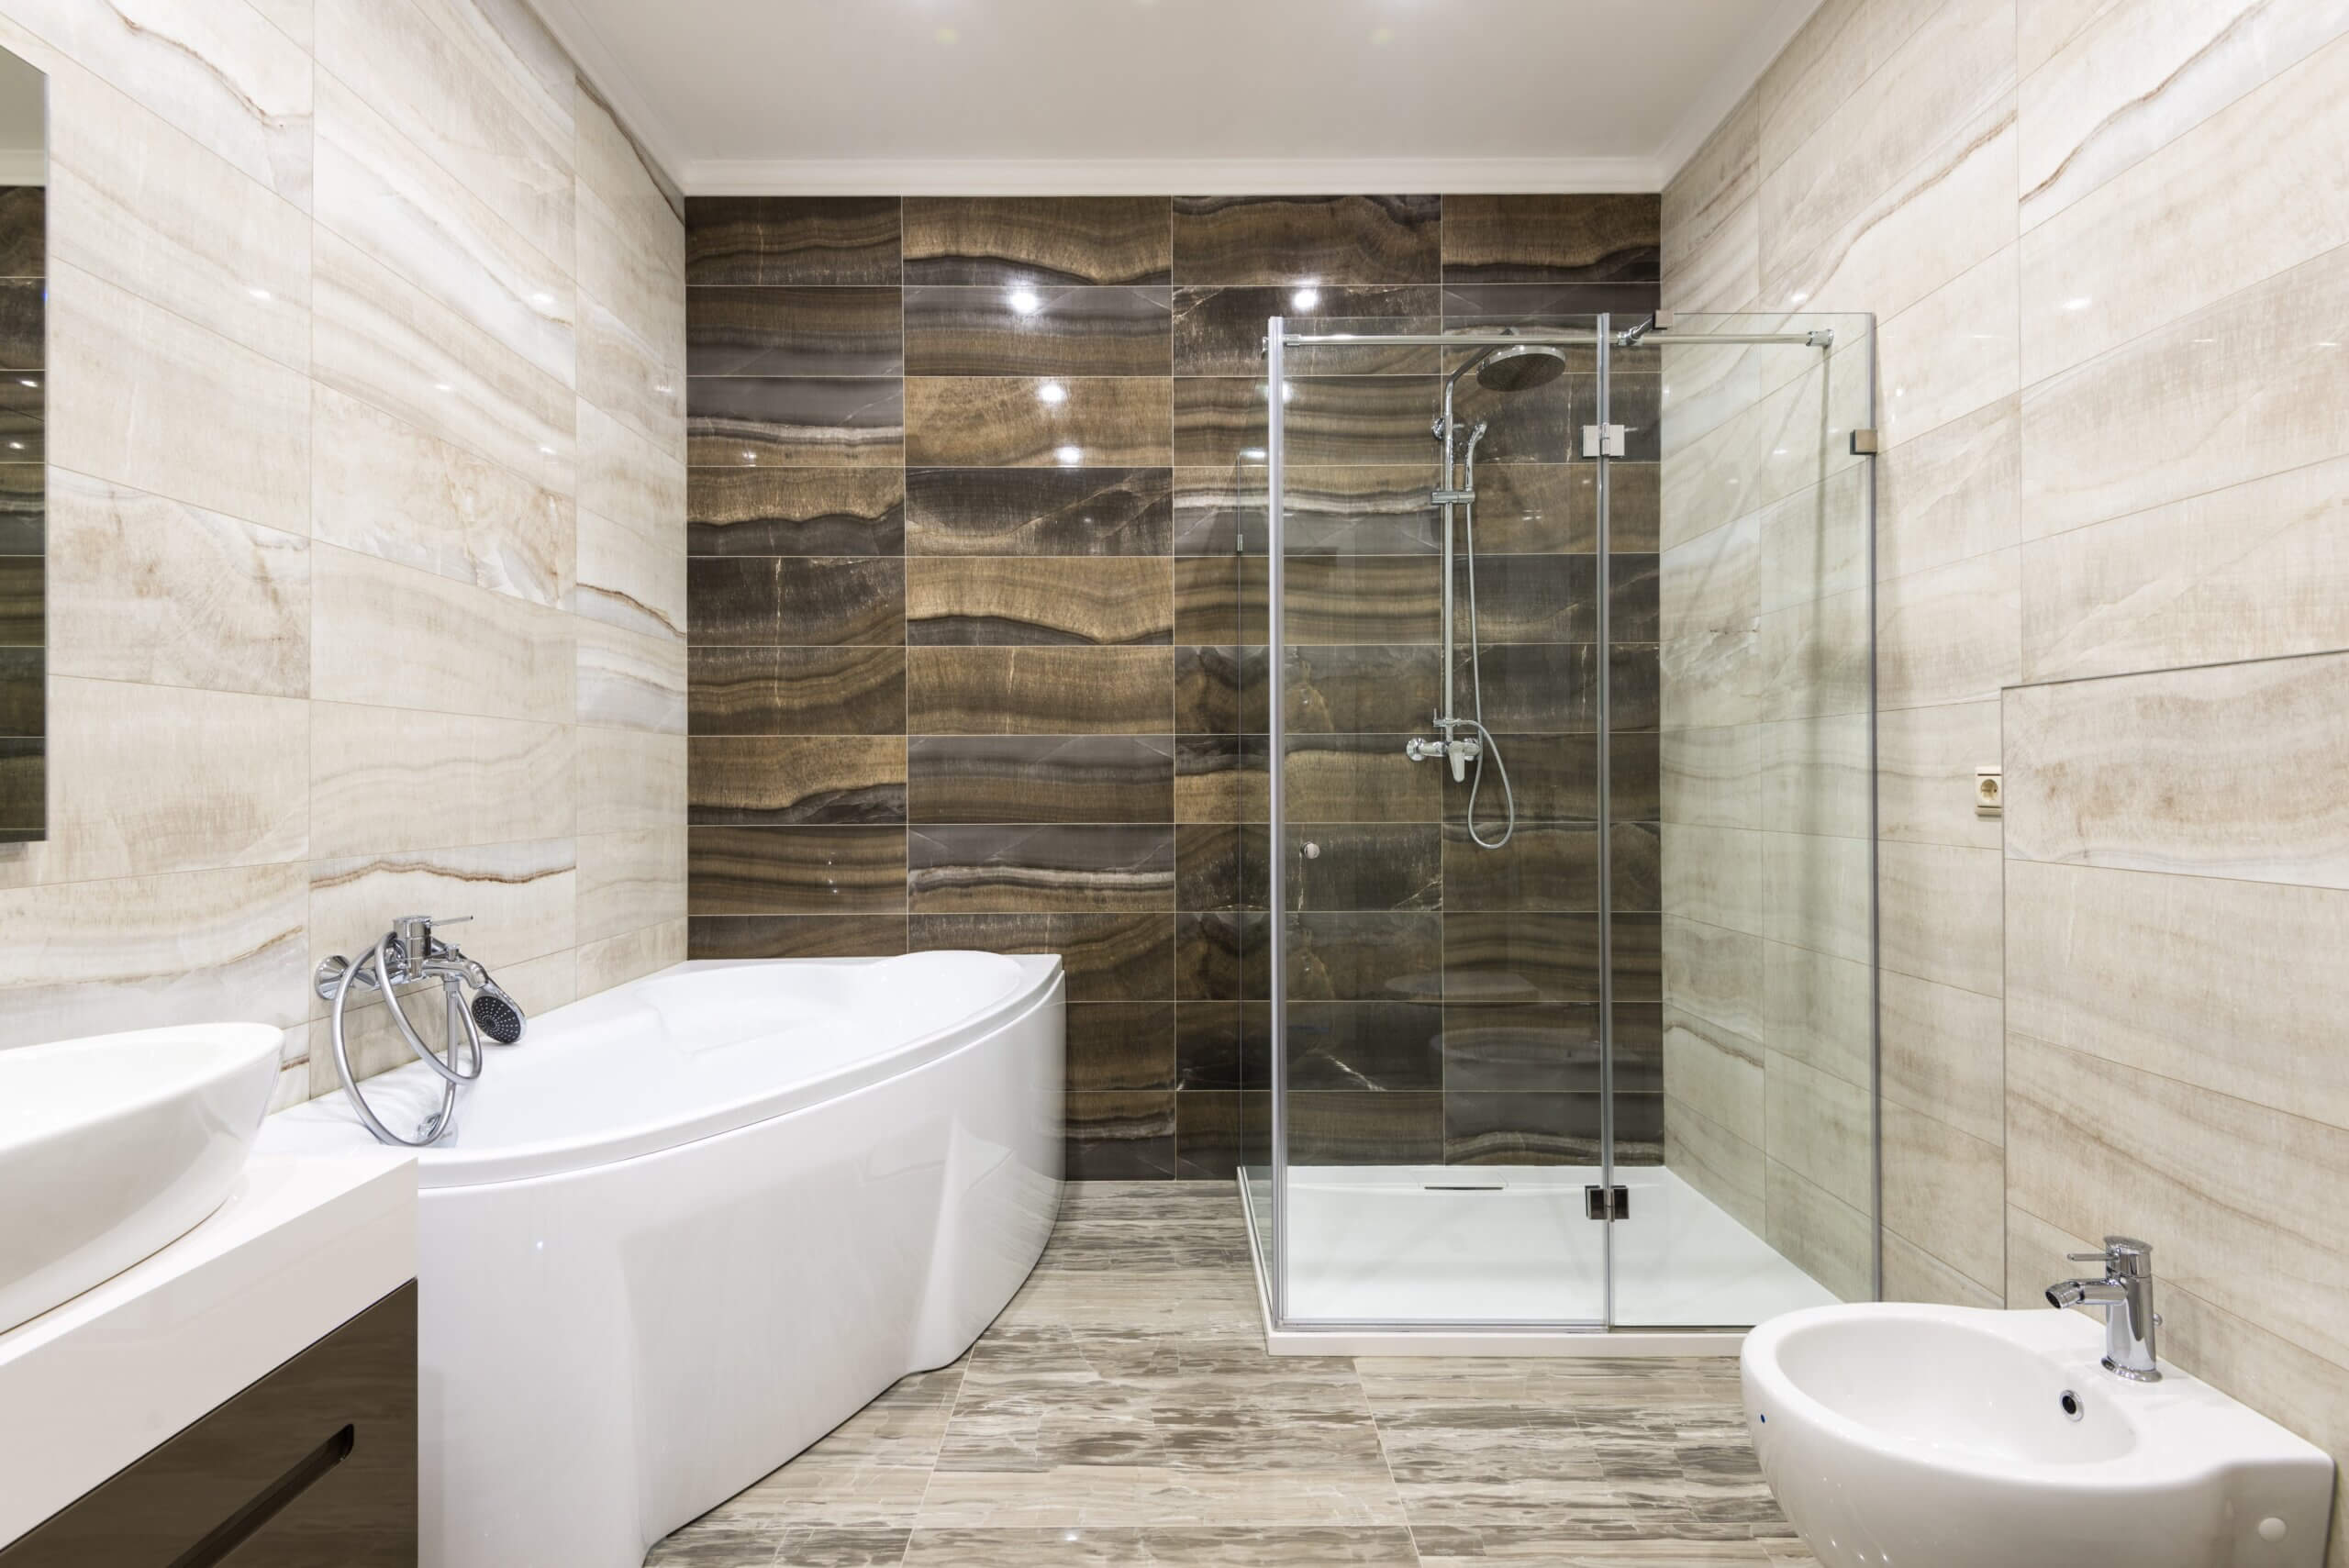 Factors that affect bathroom shower remodel